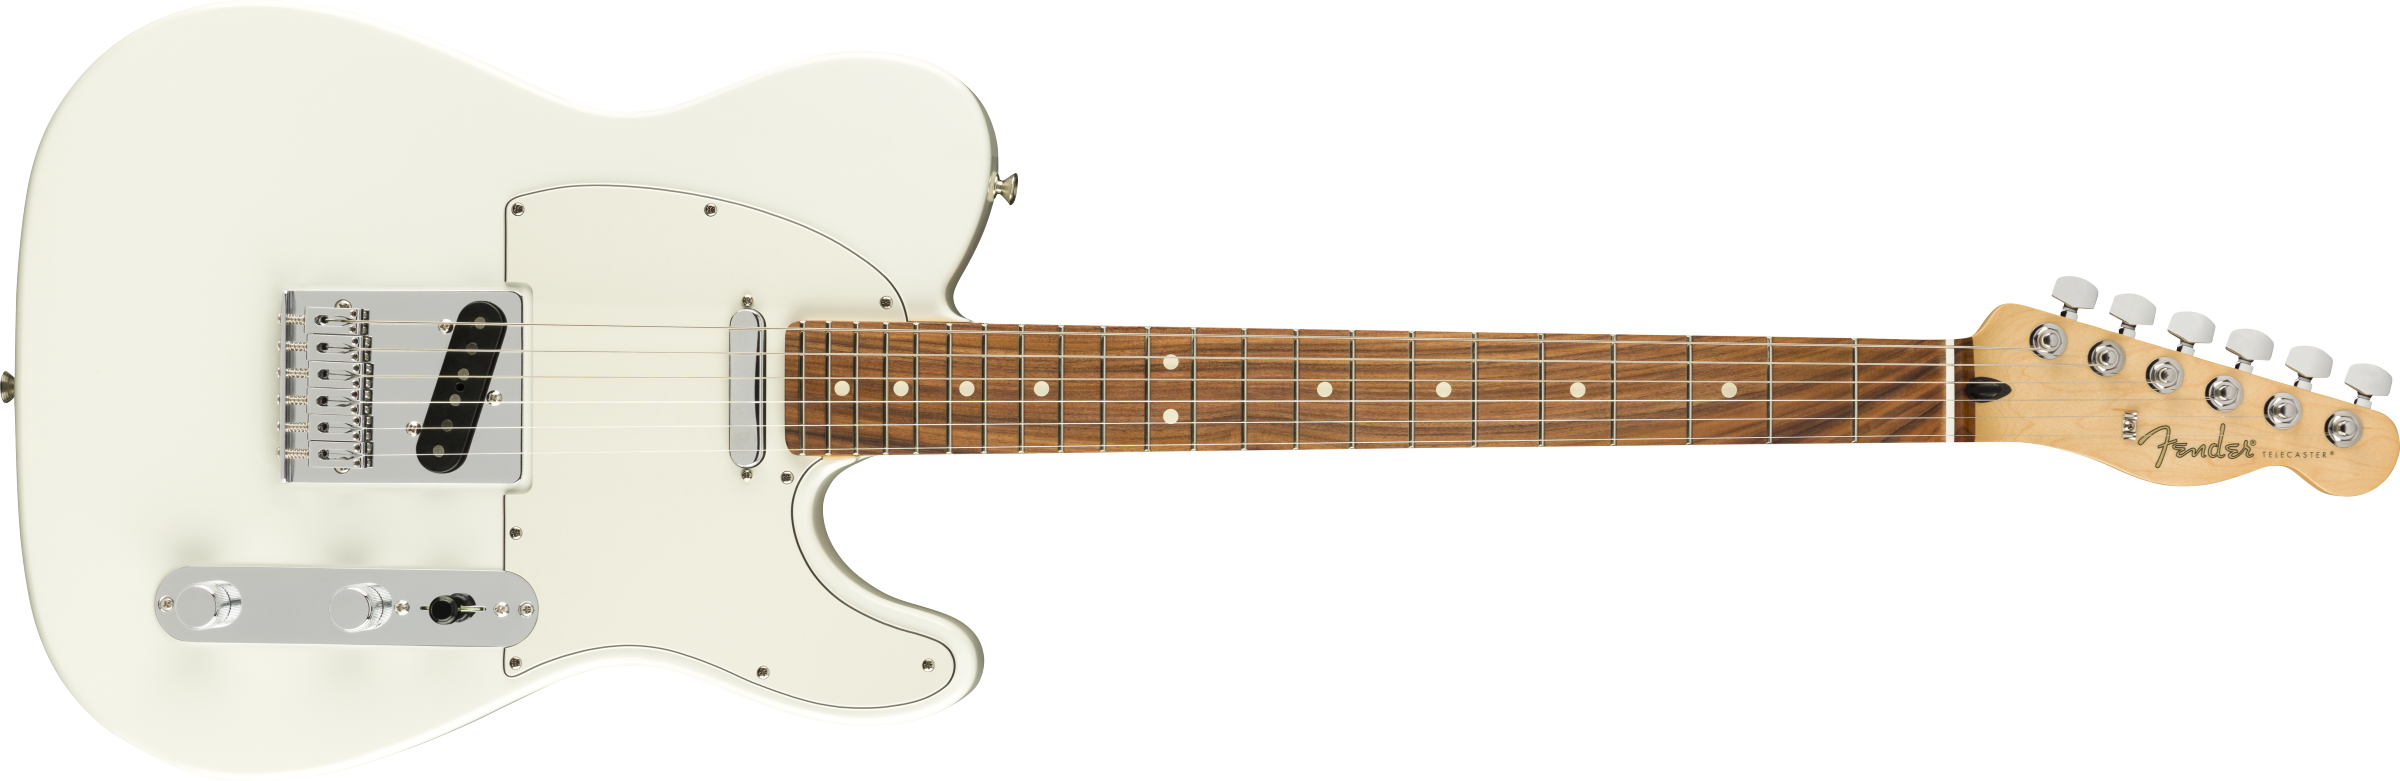 Billede af Fender Player Telecaster El-guitar (Polar White)